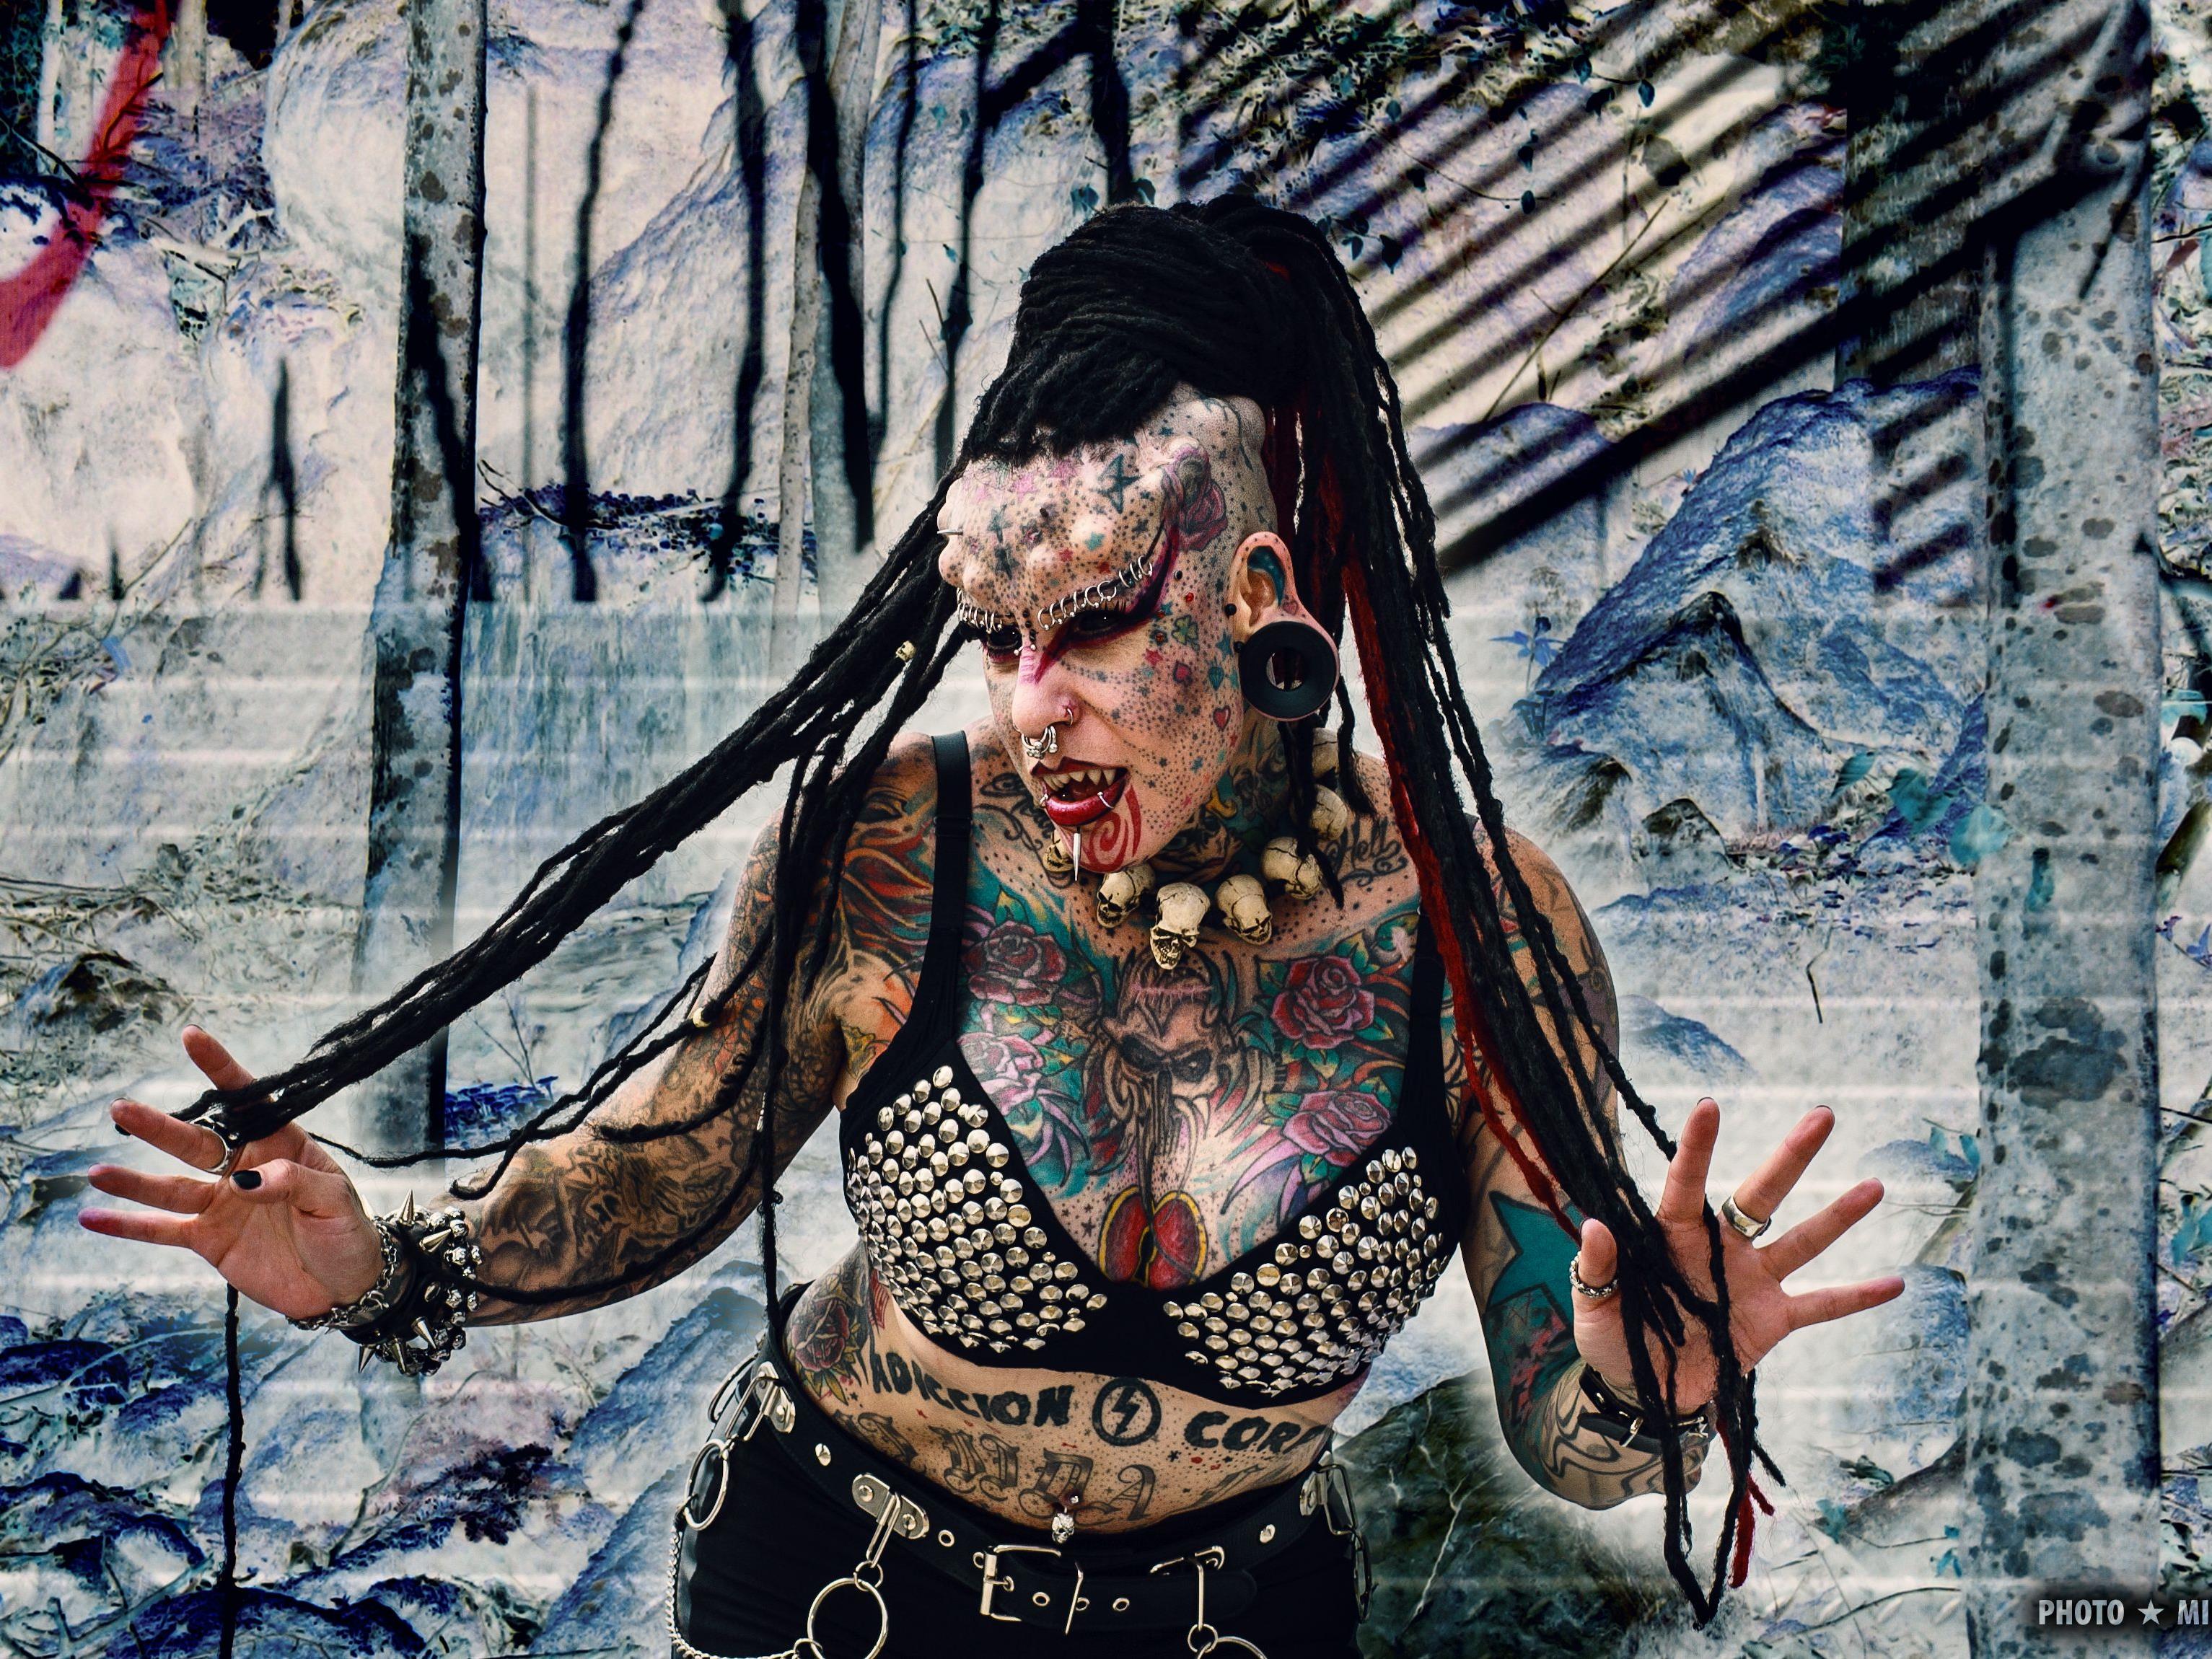 The Mexican Vampire Woman exklusiv auf der Wildystyle & Tattoo Messe.